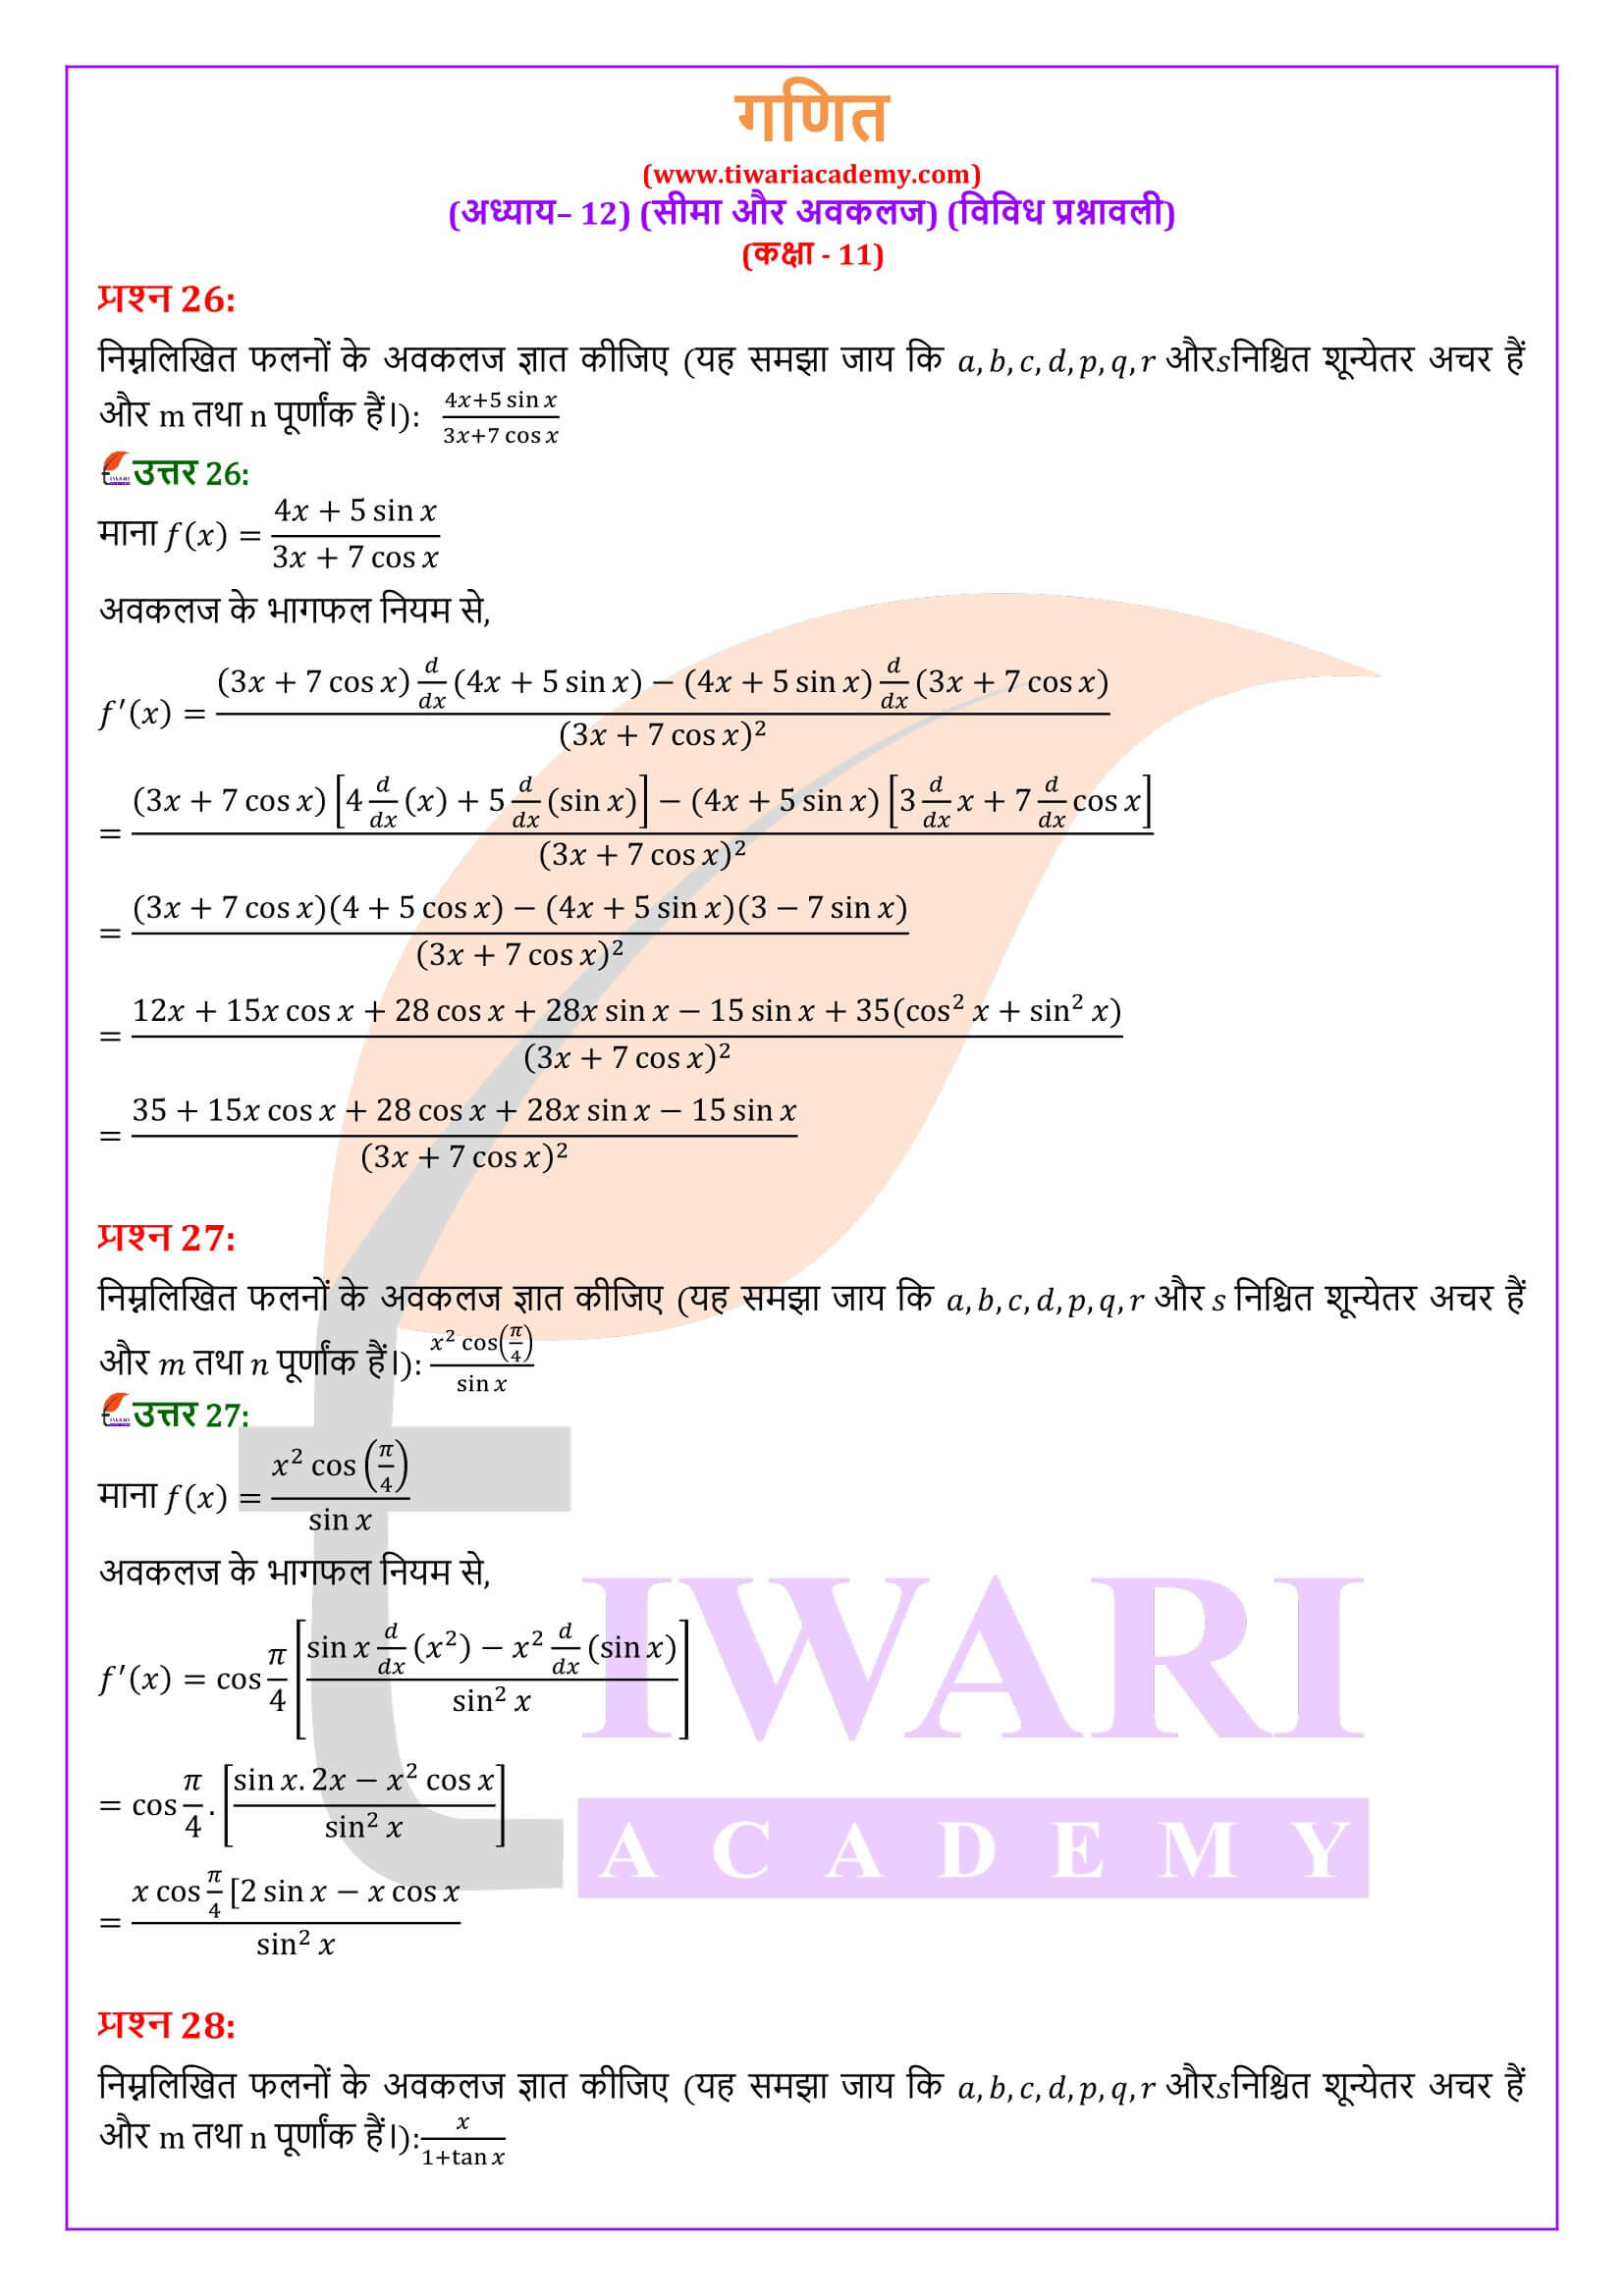 कक्षा 11 गणित अध्याय 12 विविध प्रश्न उत्तर हिंदी मीडियम में